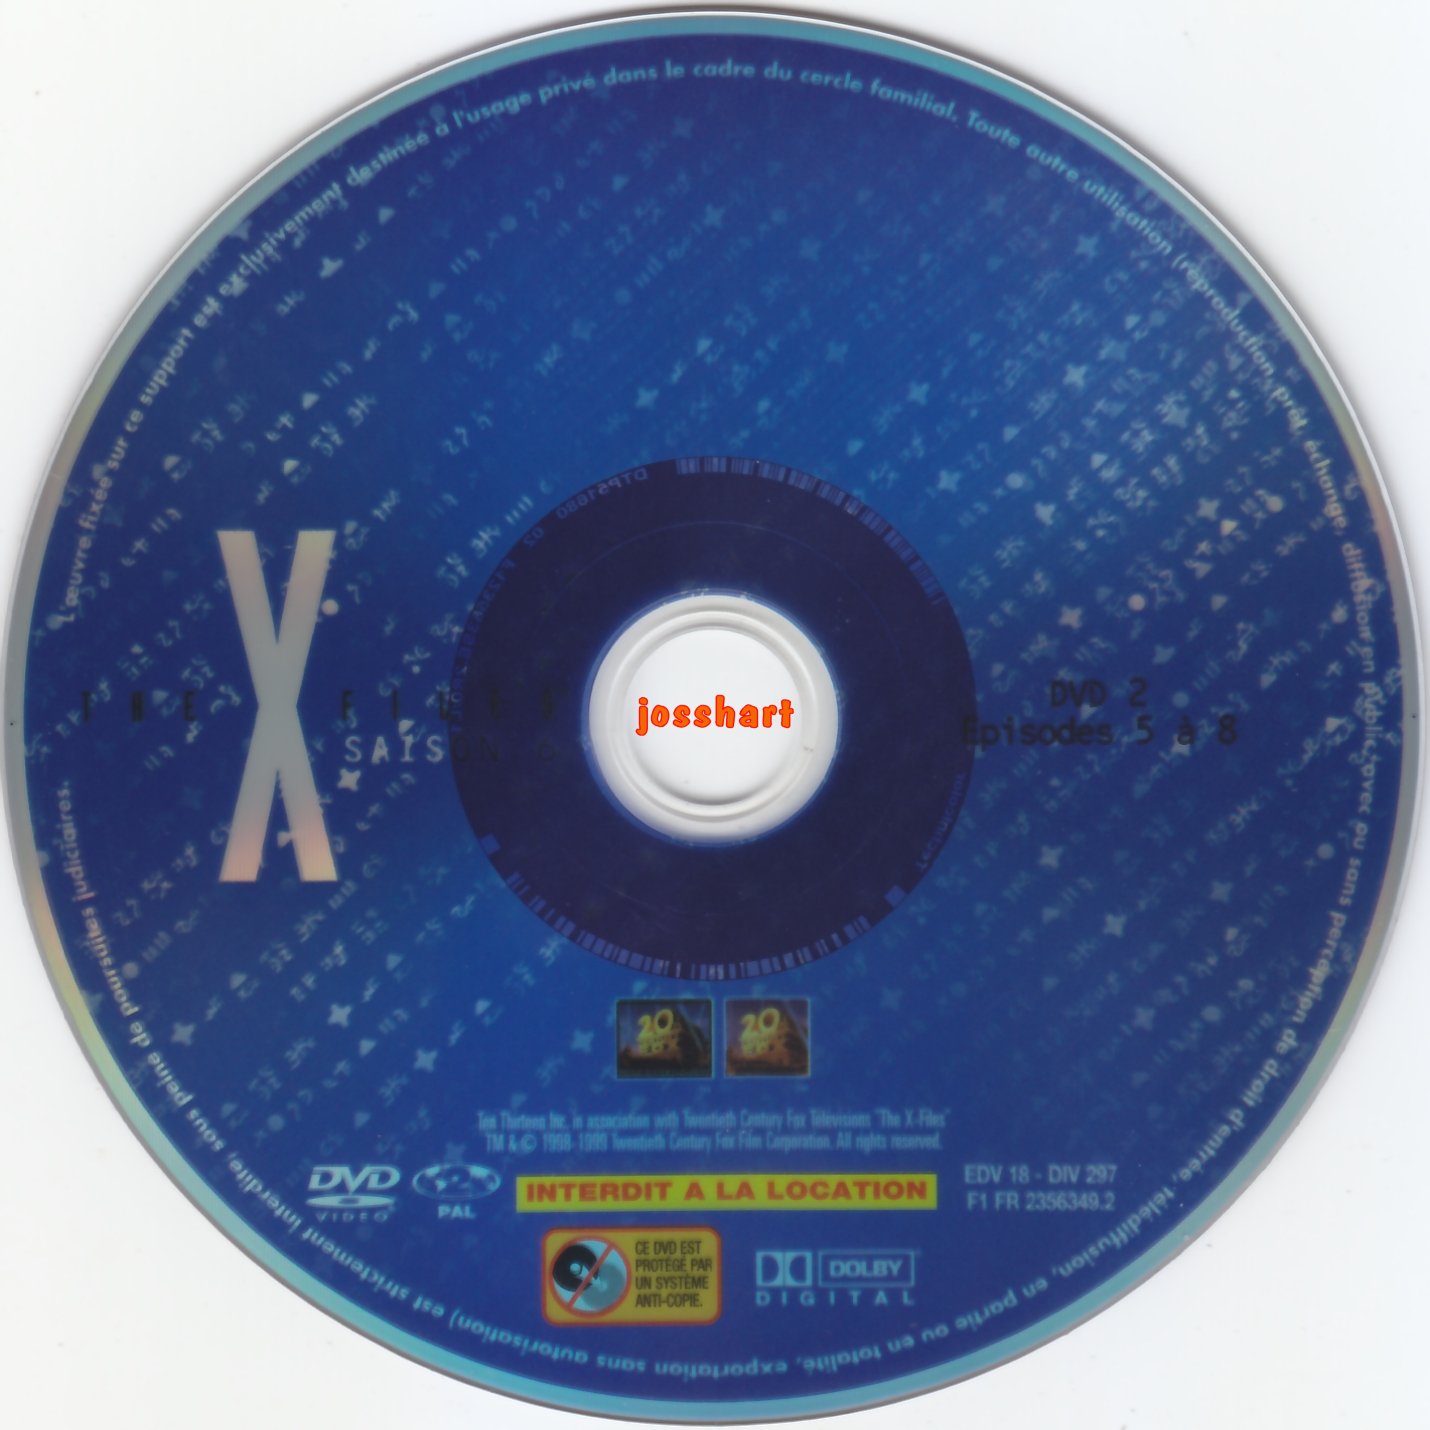 The X Files Saison 6 DVD 2 v2